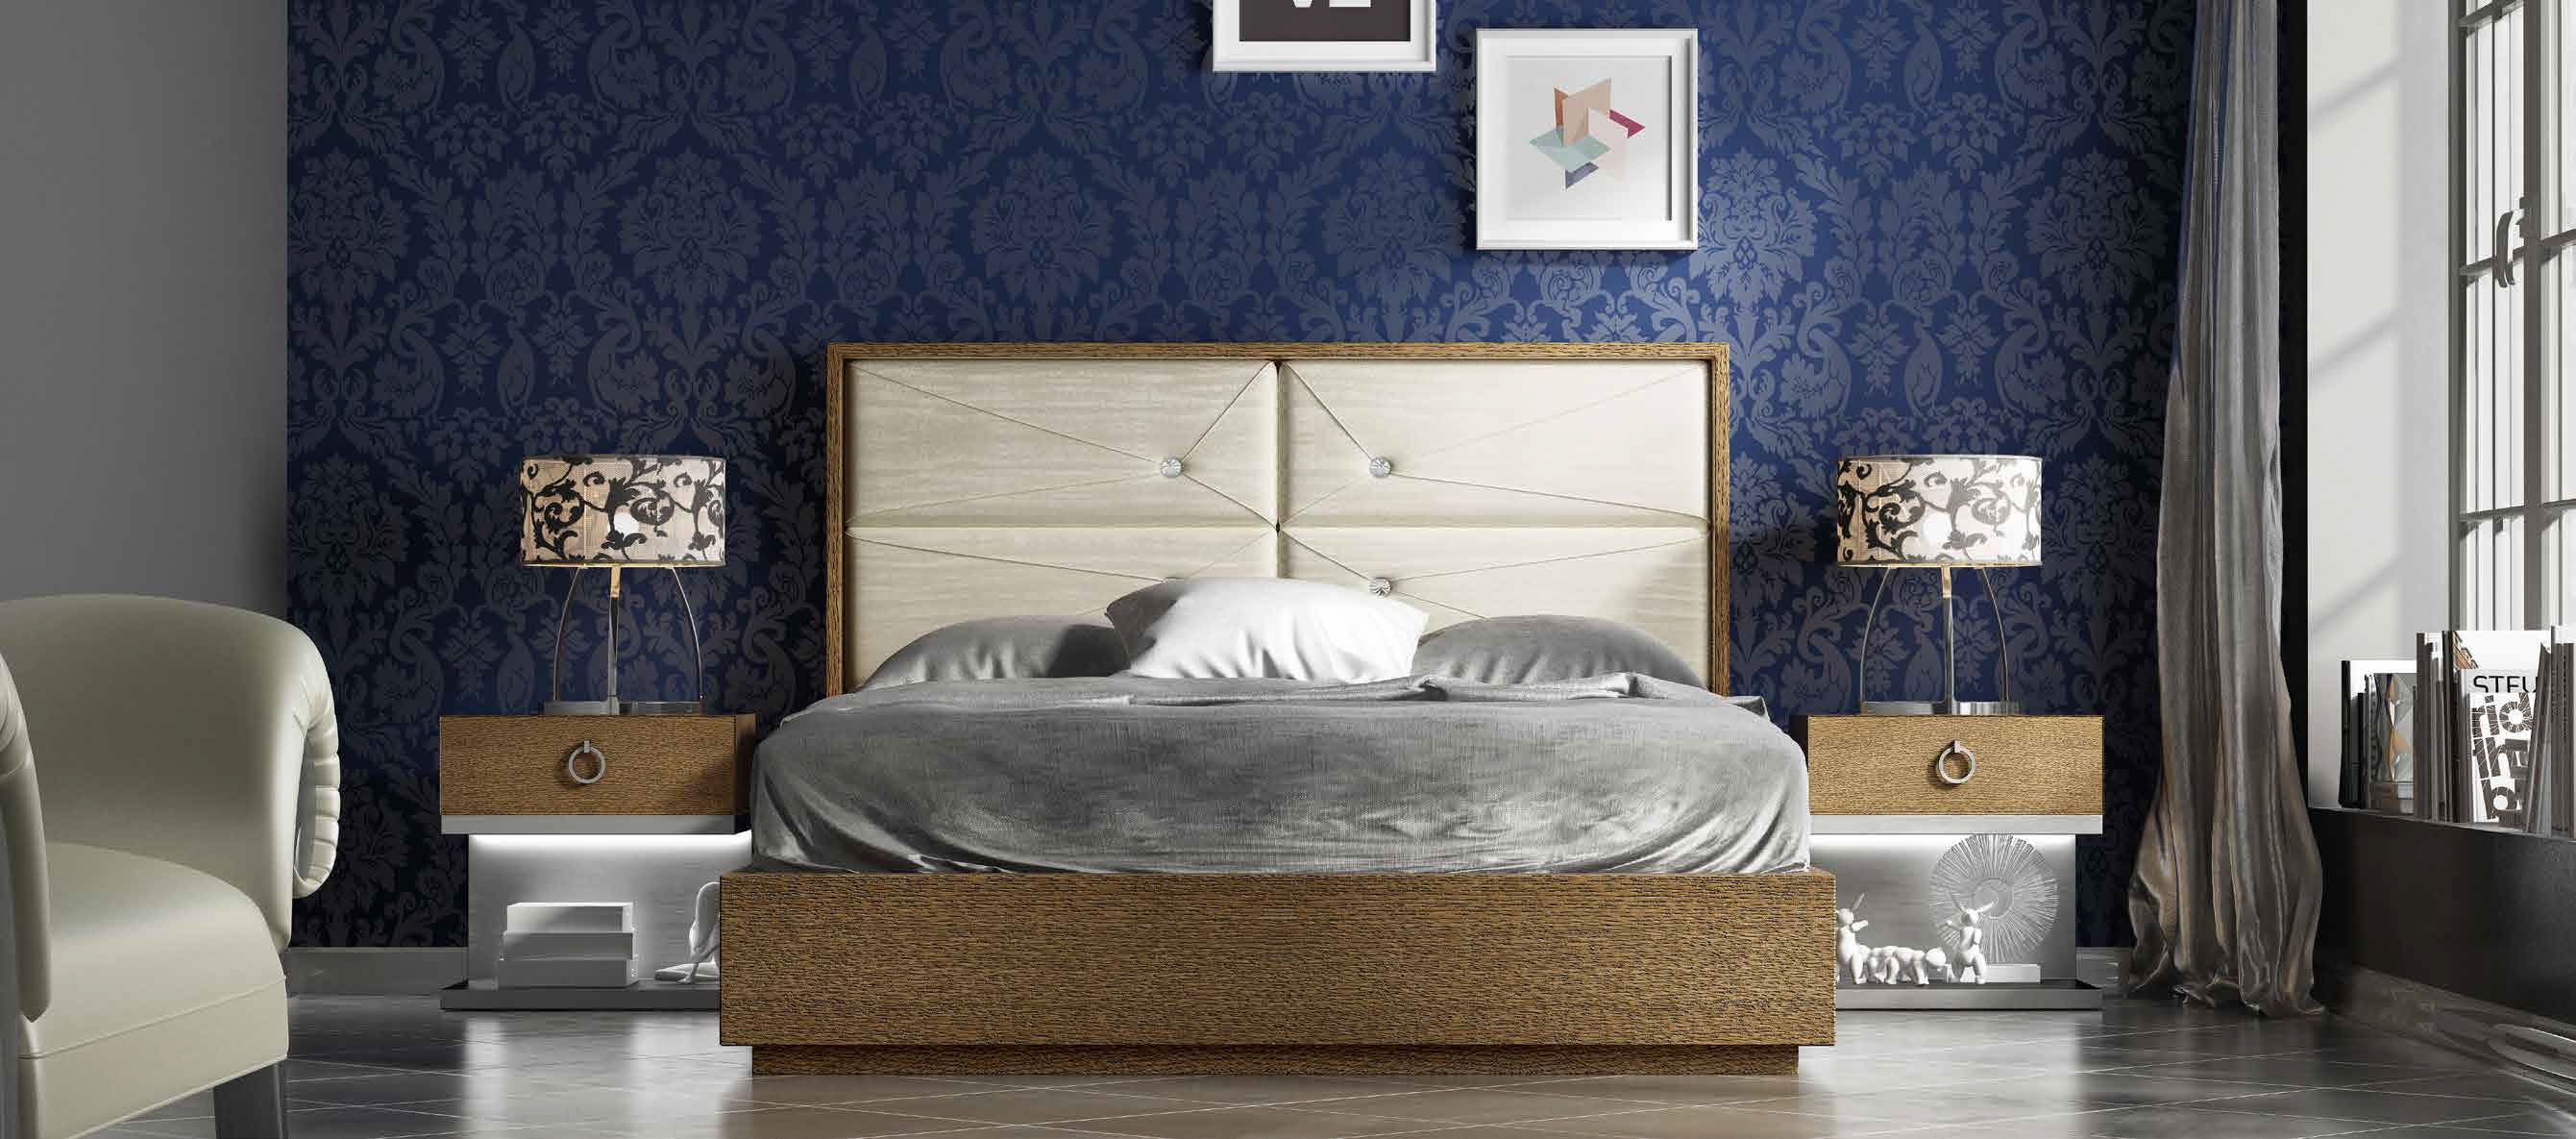 Brands MCS Classic Bedrooms, Italy DOR 39